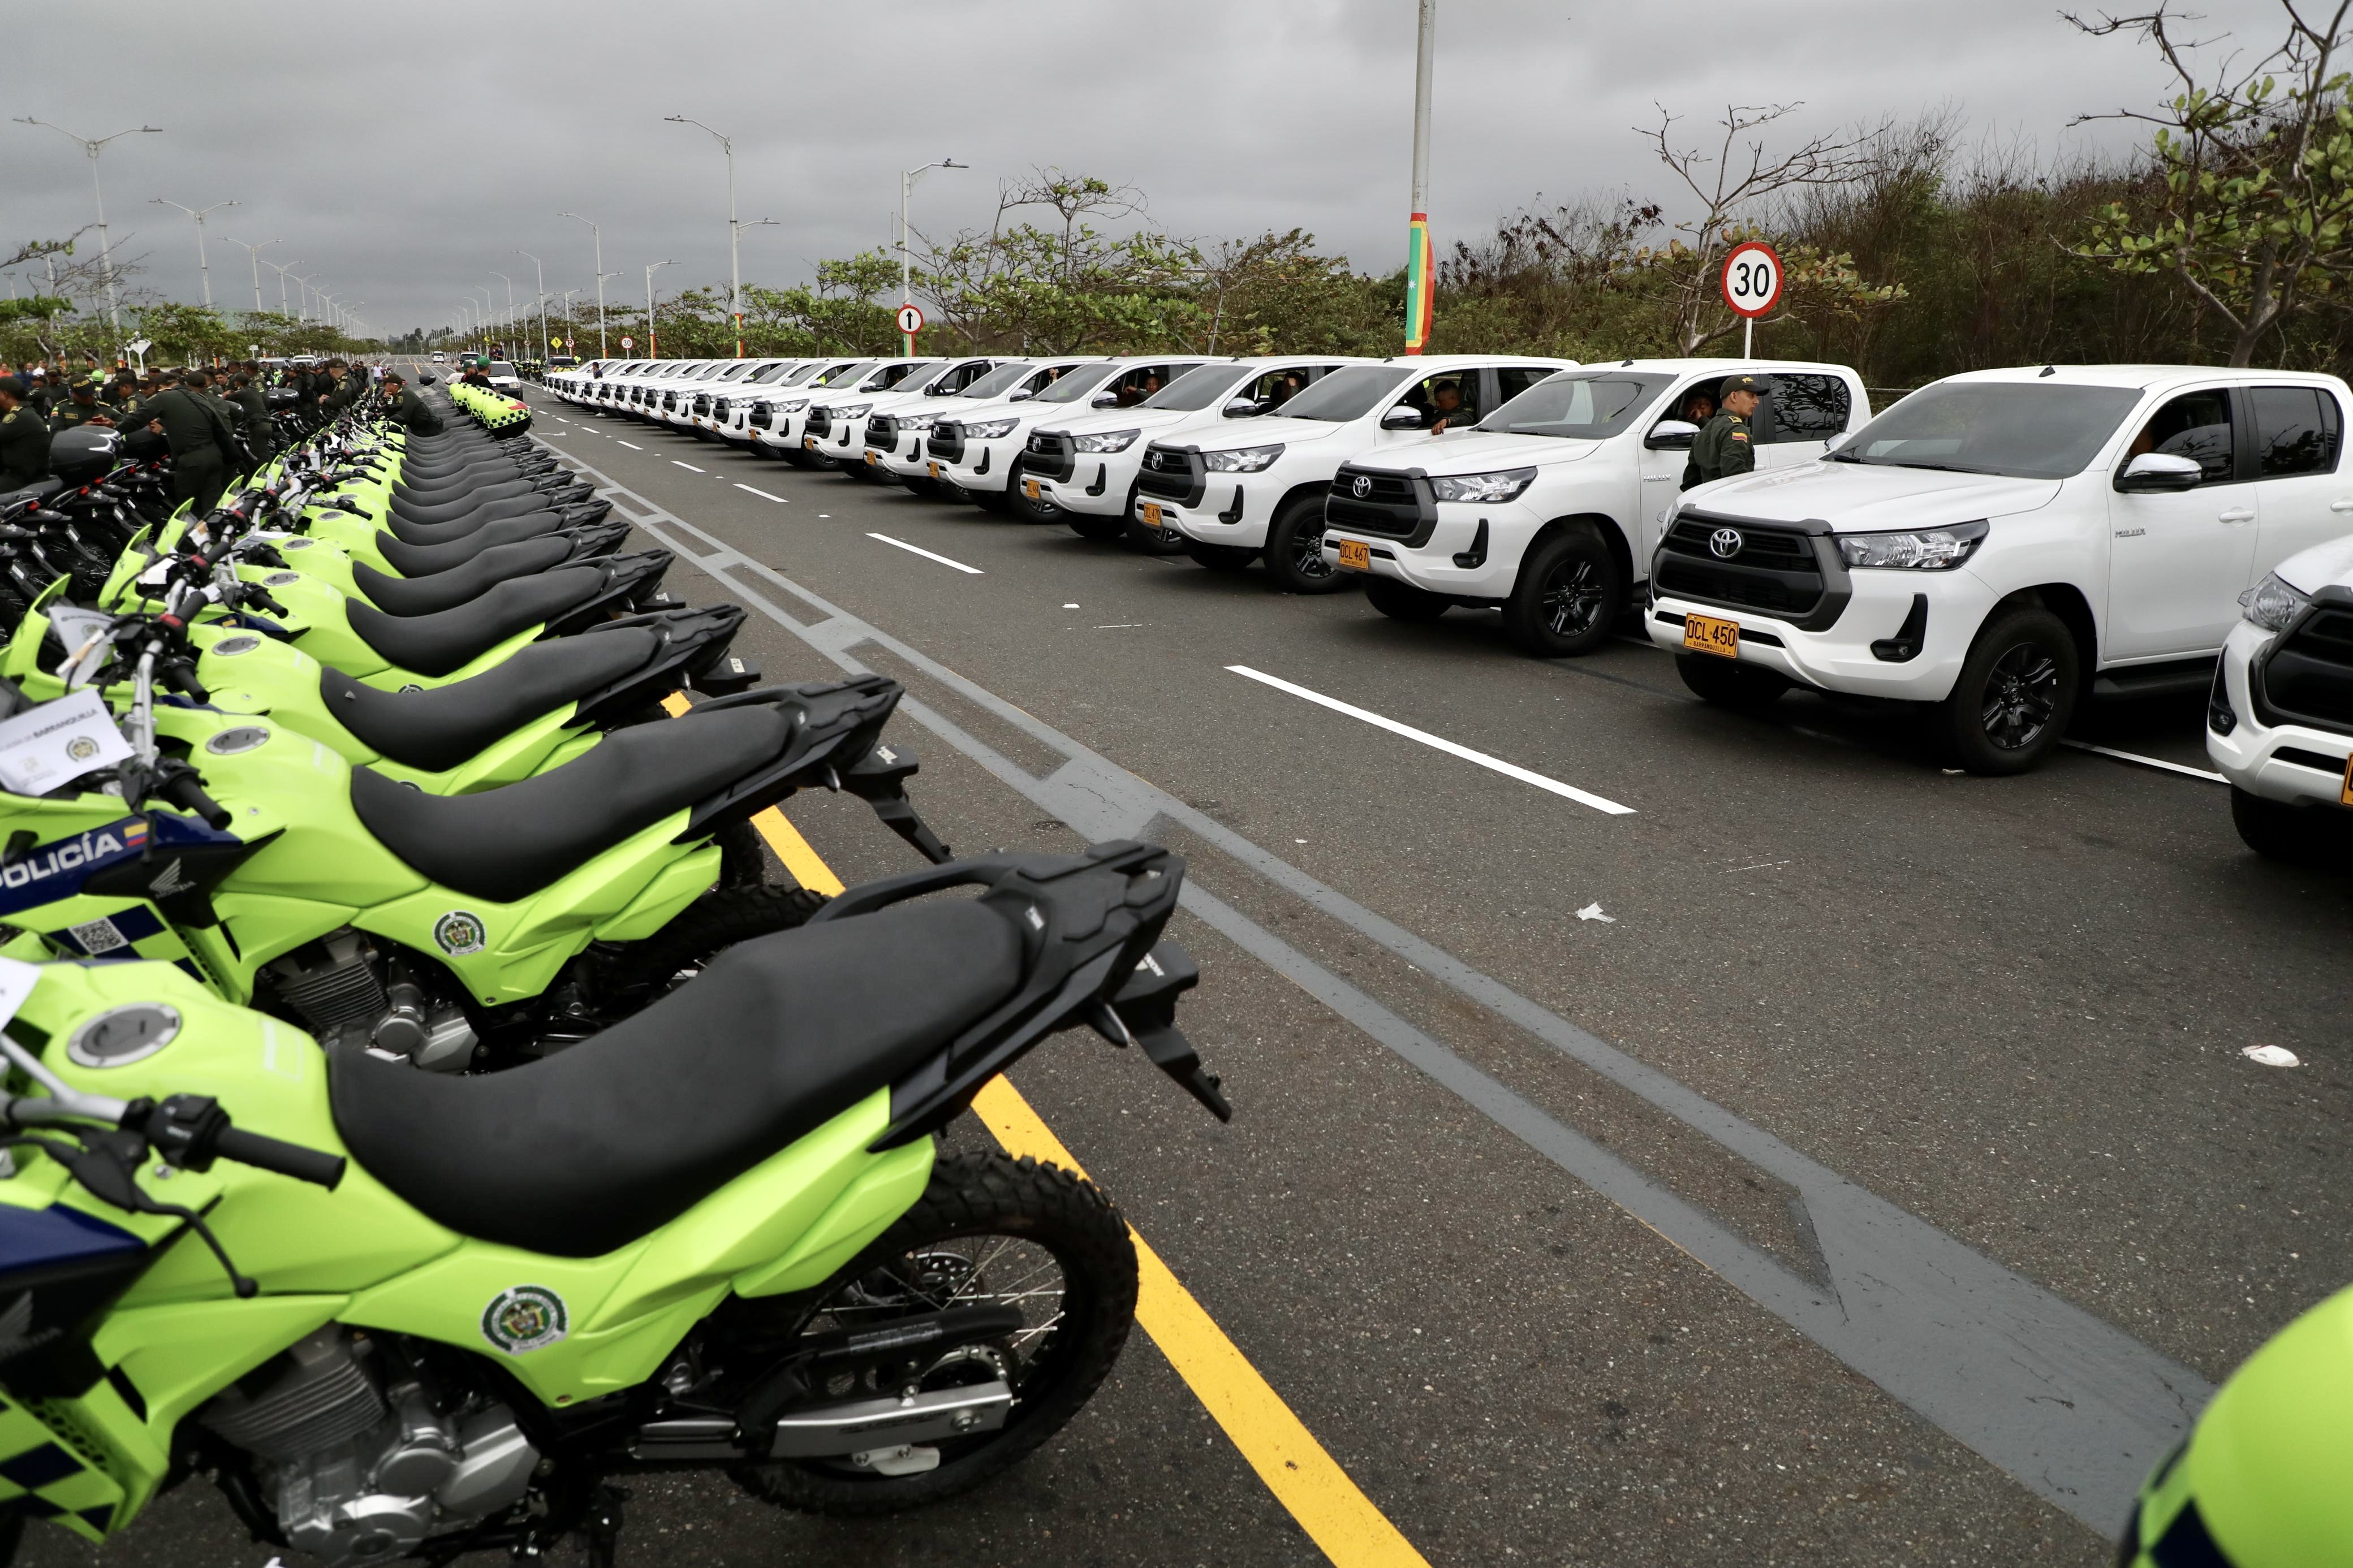 Son 409 motos y 30 camionetas para la Policia Metropolitana de Barranquilla